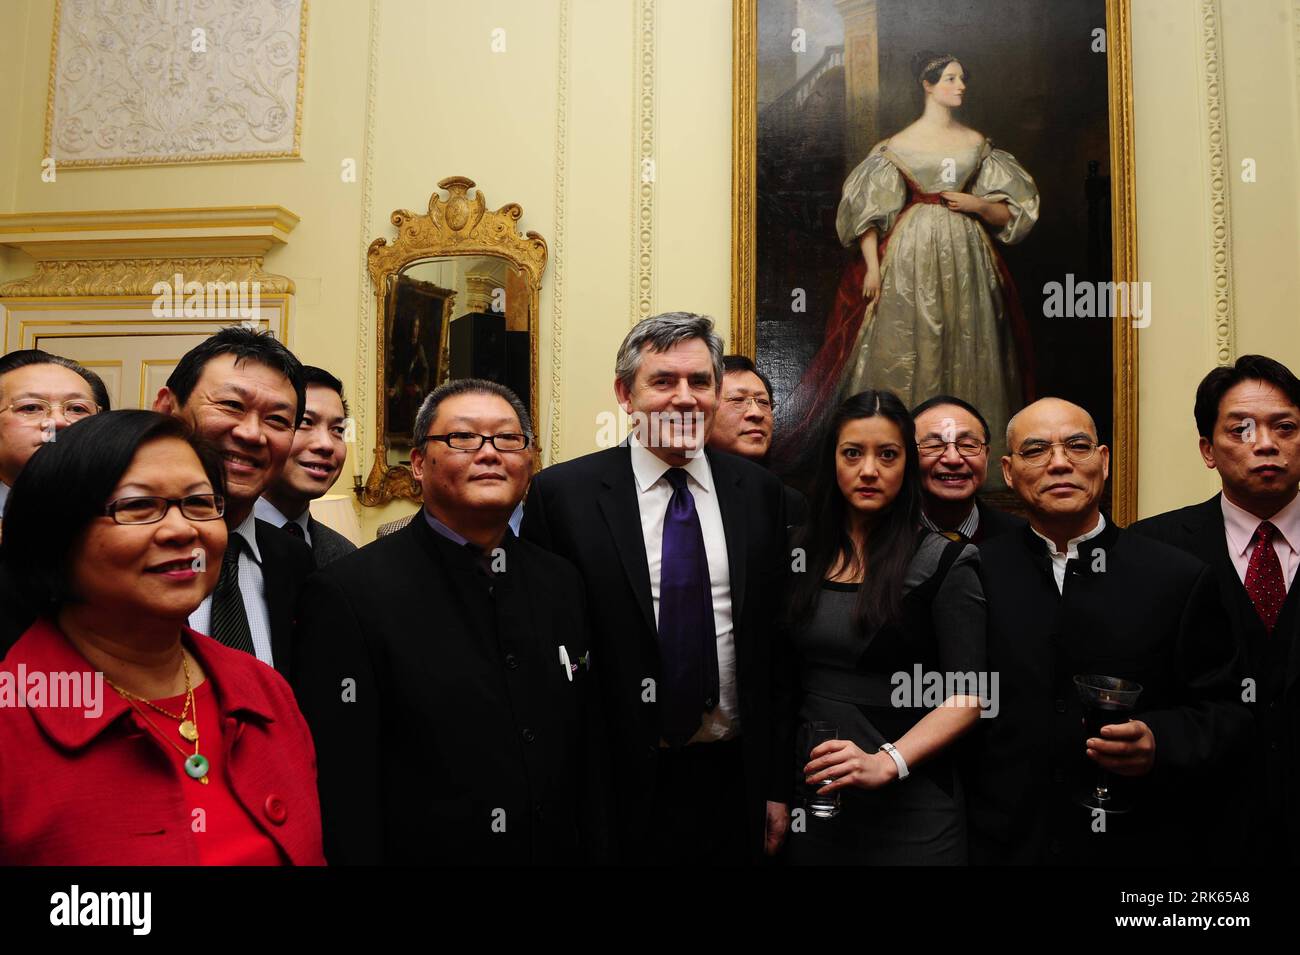 Bildnummer: 53798614 Datum: 15.02.2010 Copyright: imago/Xinhua (100215) -- LONDRA, 15 febbraio 2010 (Xinhua) -- il primo ministro britannico Gordon Brown (C) e alcuni ospiti cinesi hanno foto di gruppo scattate durante un ricevimento al No. 10 Downing Street, la residenza del primo ministro, a Londra, capitale del Regno Unito, 15 febbraio 2010. Brown ha ospitato un ricevimento per i cinesi d'oltremare in Gran Bretagna lunedì per celebrare il capodanno lunare cinese che cade il 14 febbraio di quest'anno. (Xinhua/Zeng Yi) (gxr) (1)GRAN BRETAGNA-CINA-BROWN-NO. 10-LUNAR CINESE CELEBRAZIONE DEL NUOVO ANNO PUBLICATIONxNOTxINxCHN People Politik k k Foto Stock